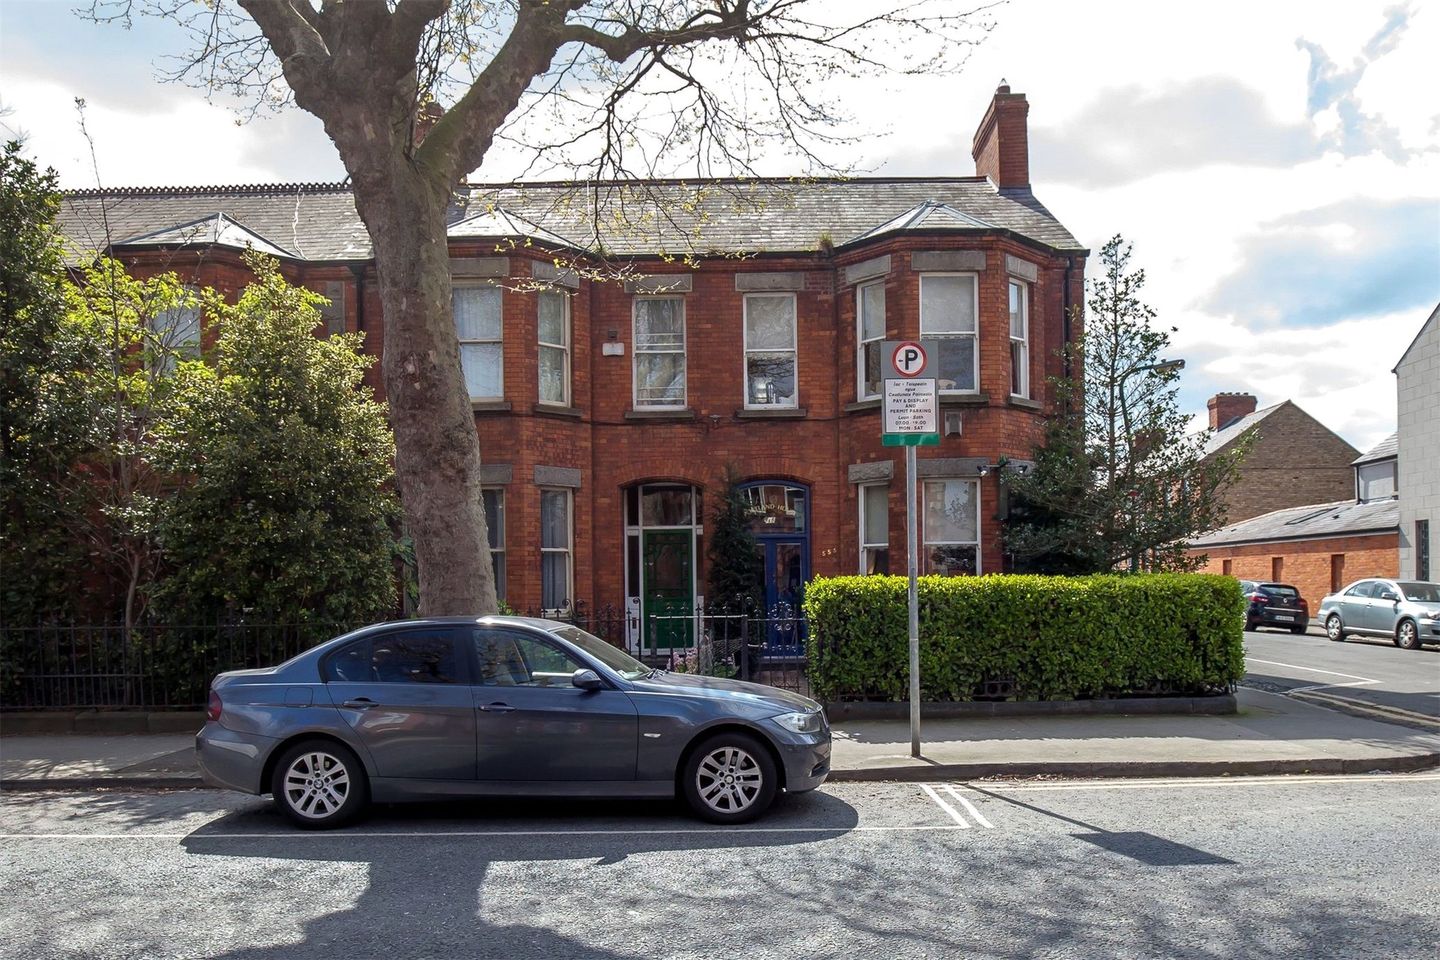 Portland House, 555 South Circular Road, Kilmainham, Dublin 8, D08R1X0